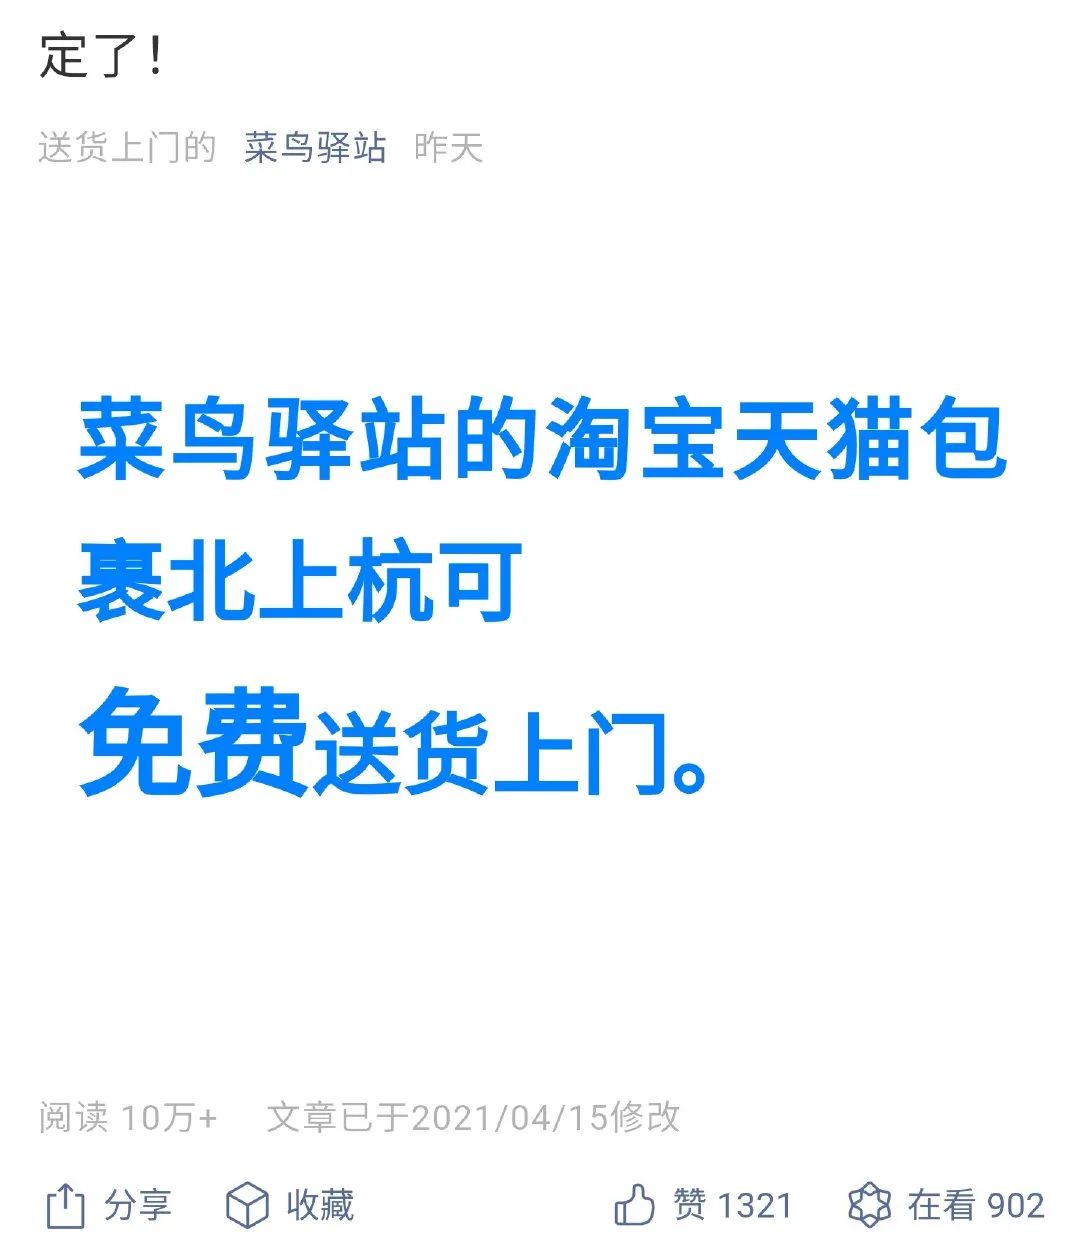 菜鸟服务商是干什么的 Oschina 中文开源技术交流社区